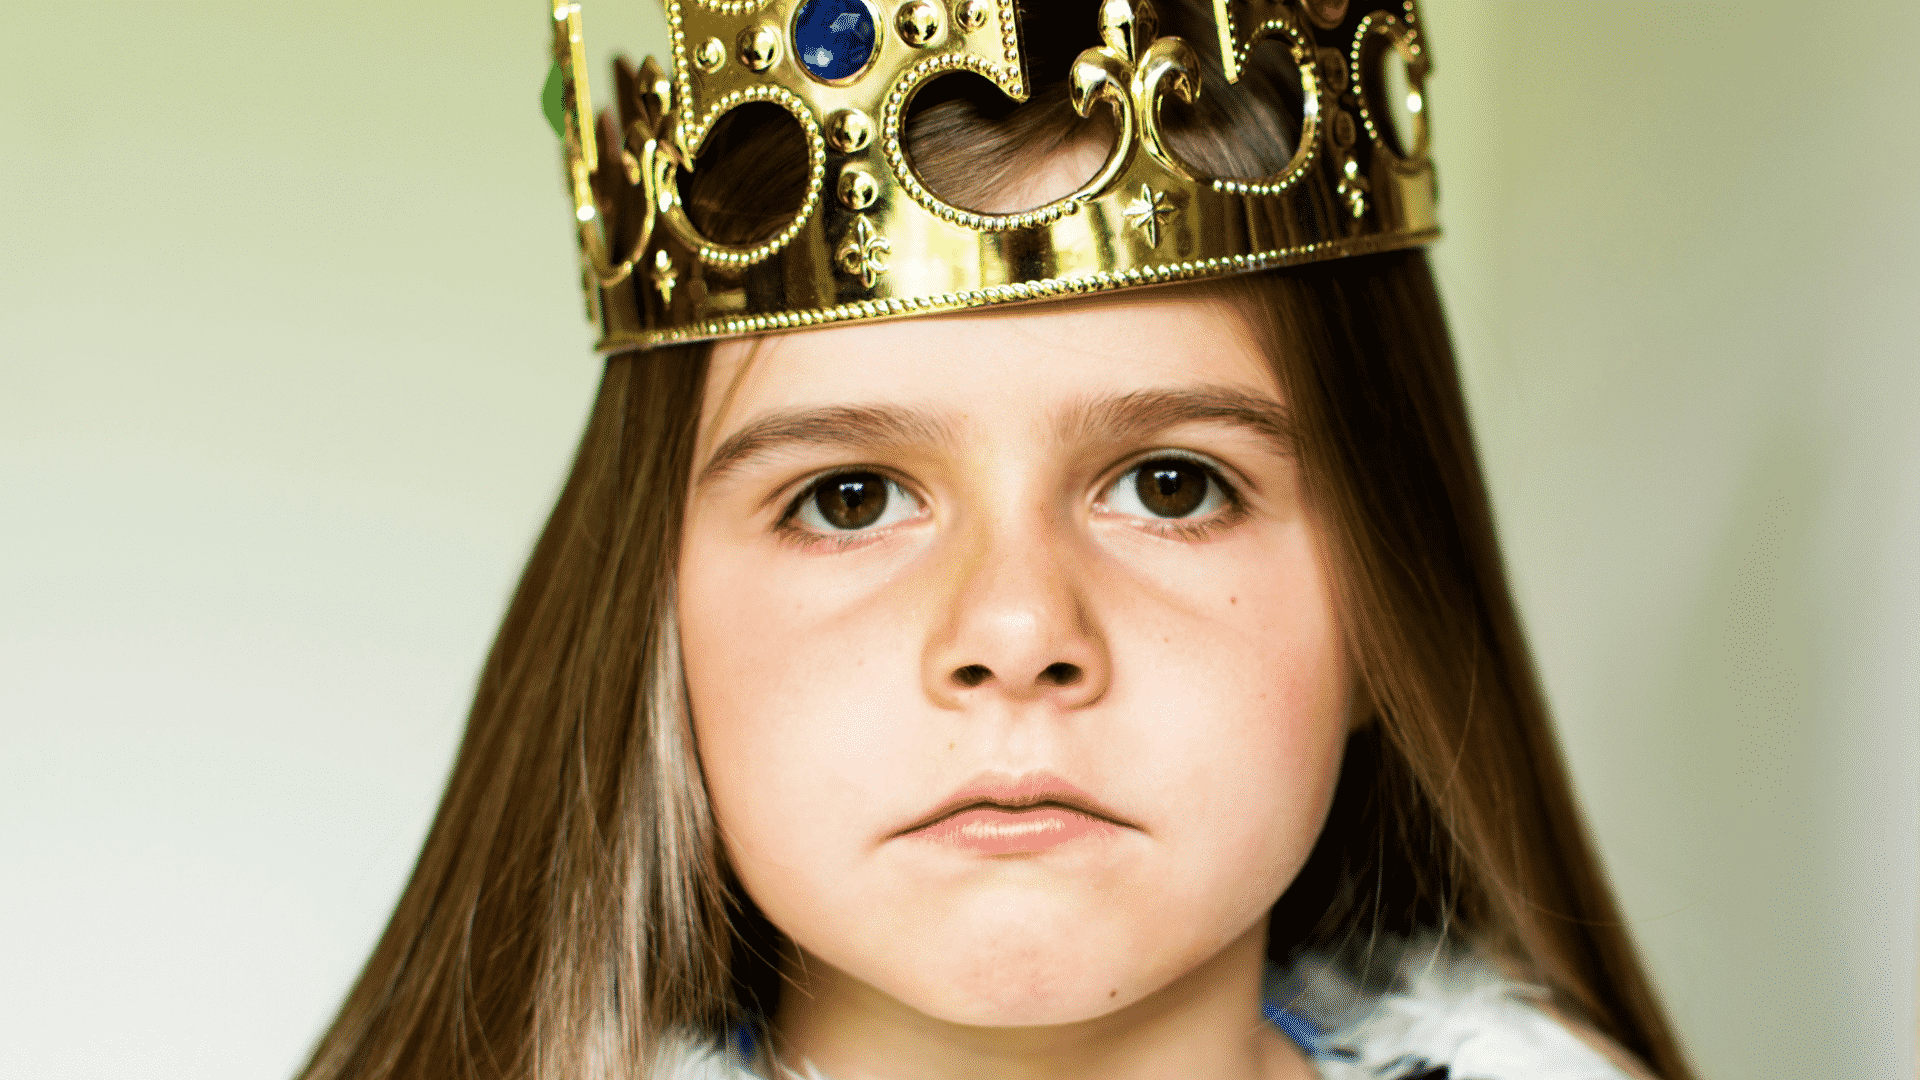 Garota brava usando uma coroa de rainha